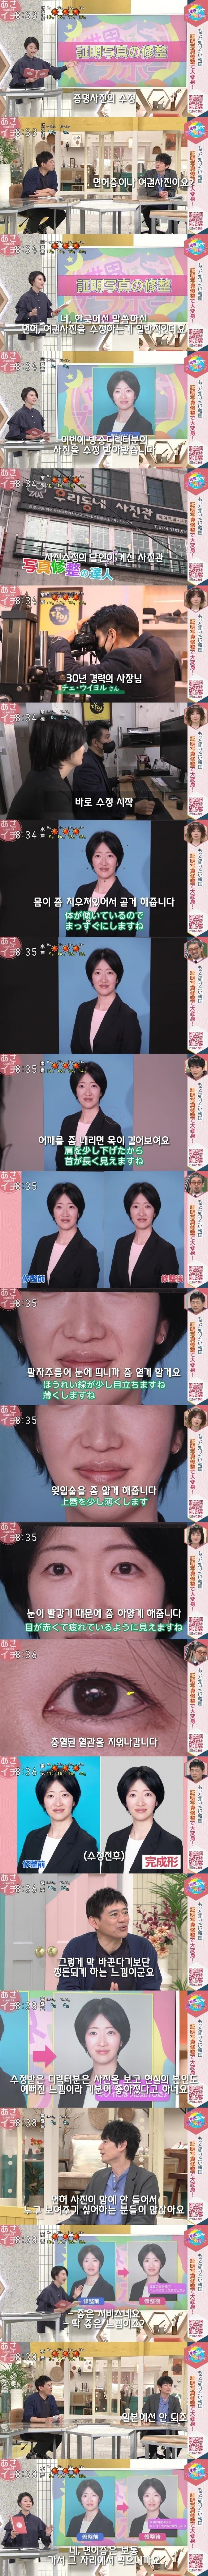 한국에서 증명사진 찍고 보정 받는 체험하는 일본 예능프로그램